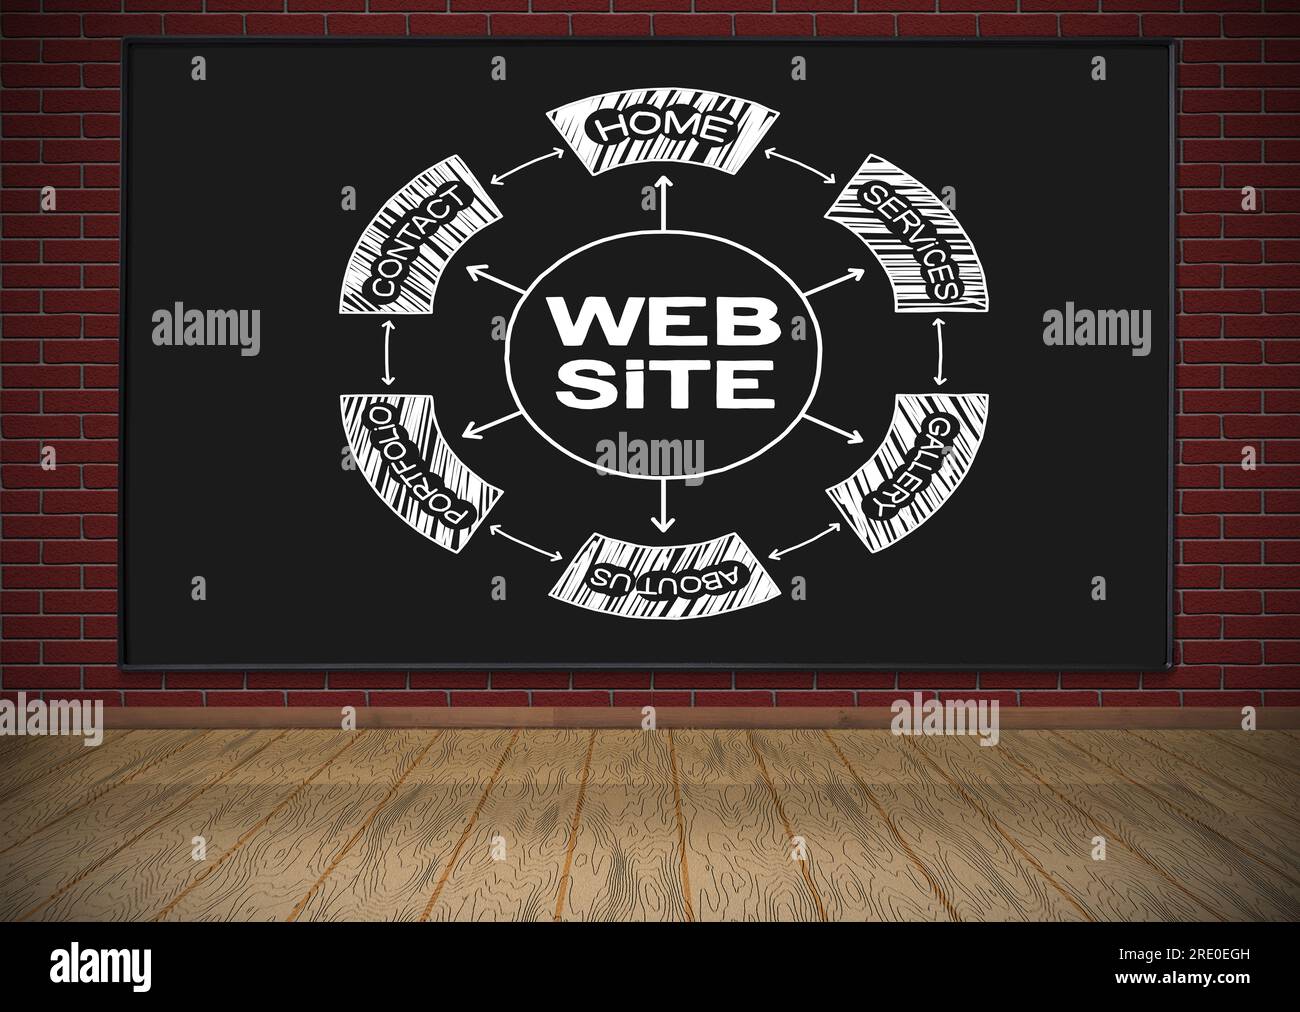 tableau noir avec schéma de site web de dessin accroché sur le mur de briques rouges Banque D'Images